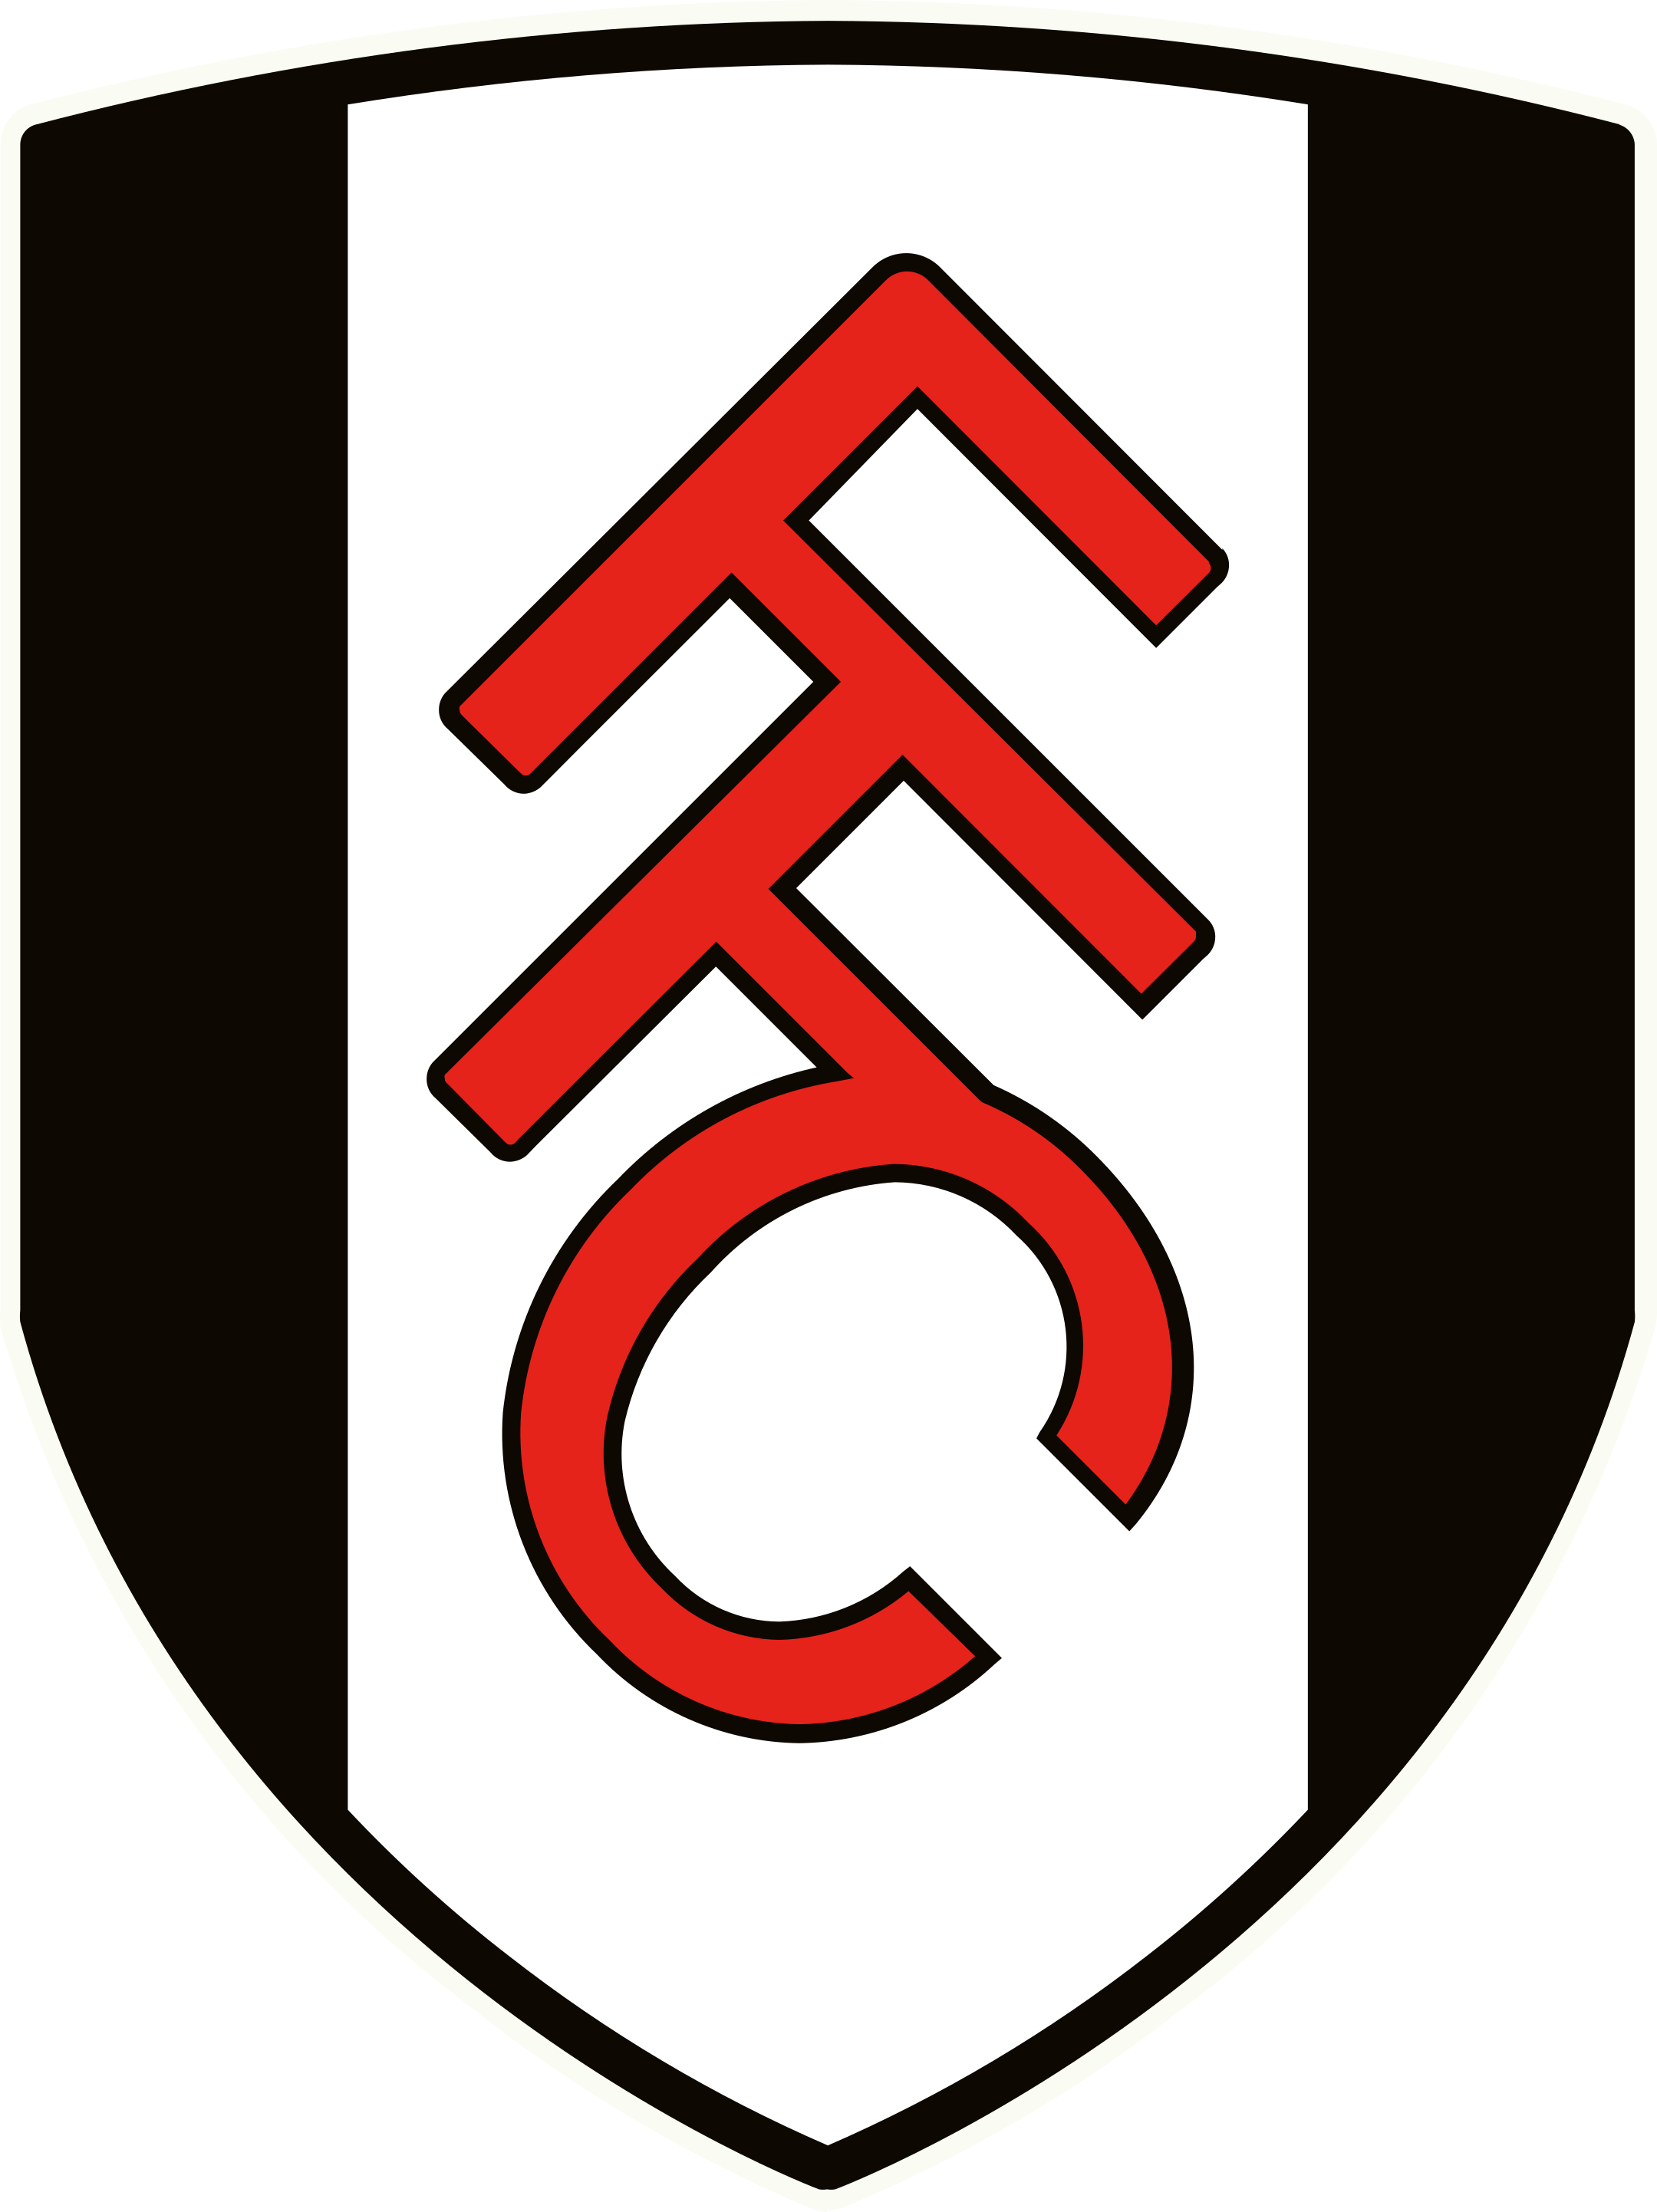 fulham fc logo 1 - Fulham FC Logo